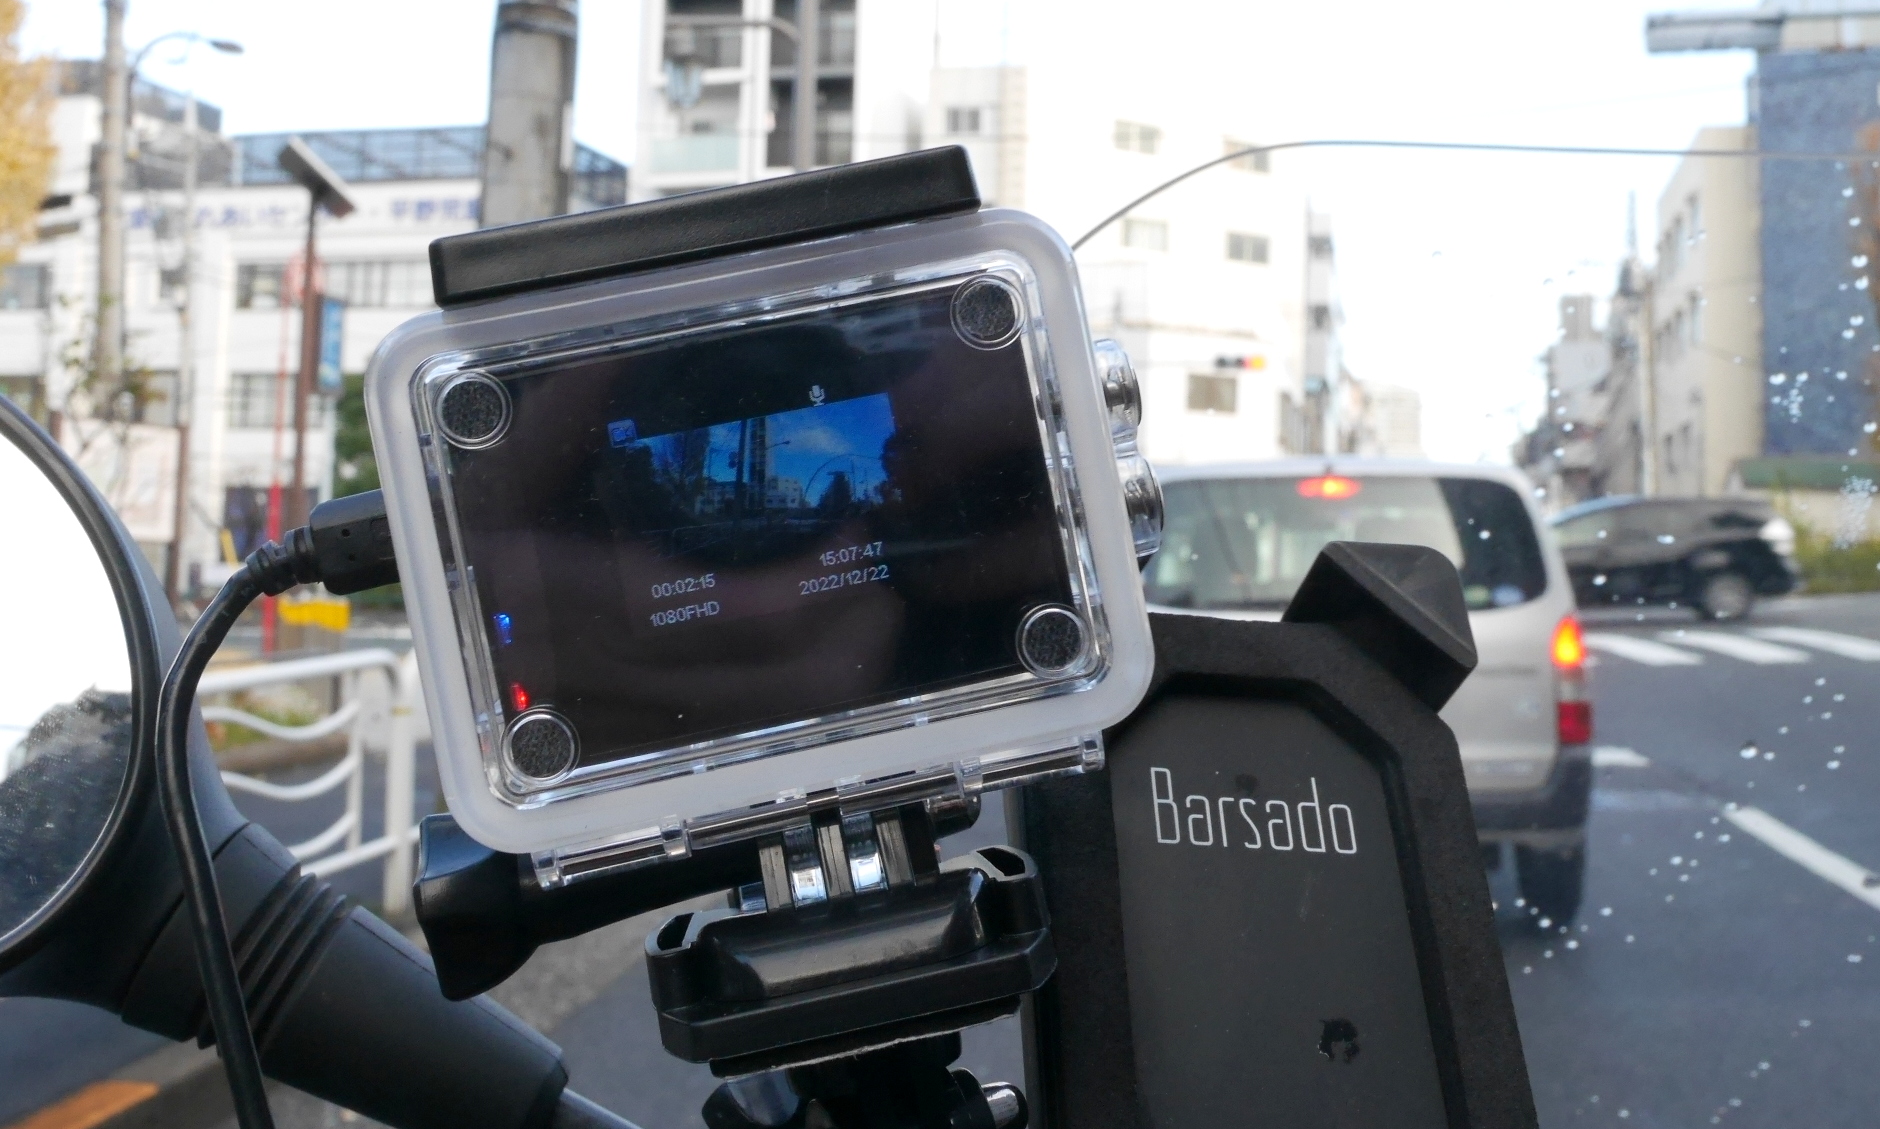 スズキ バーグマン 200 にドライブレコーダーを取り付ける / アクションカメラのドラレコ転用例